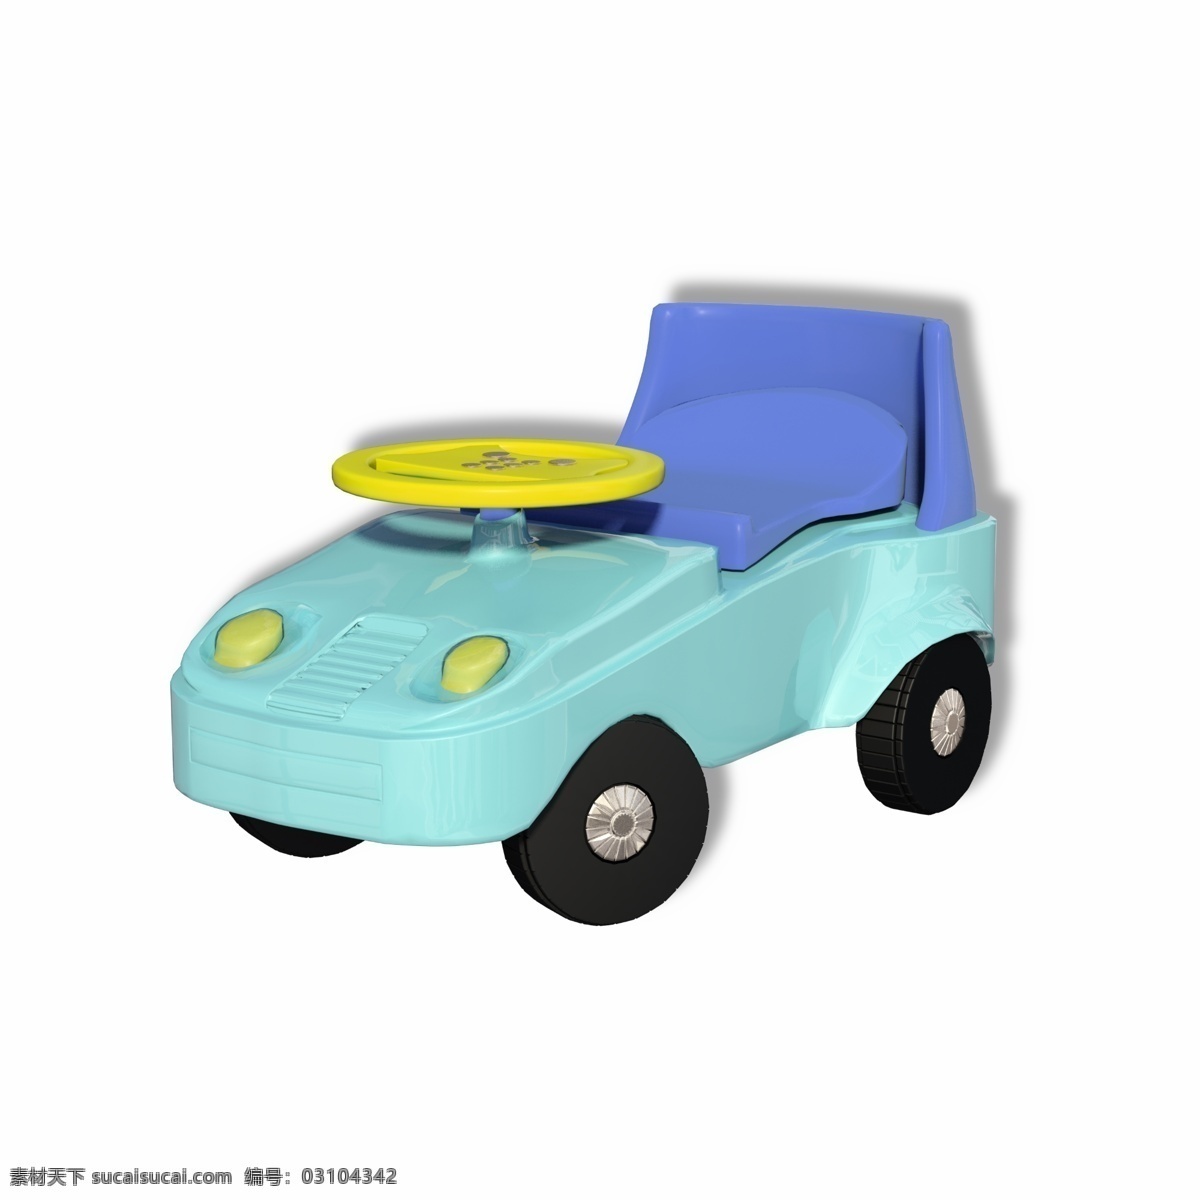 塑料 彩色 儿童 汽车 玩具 童车 小汽车